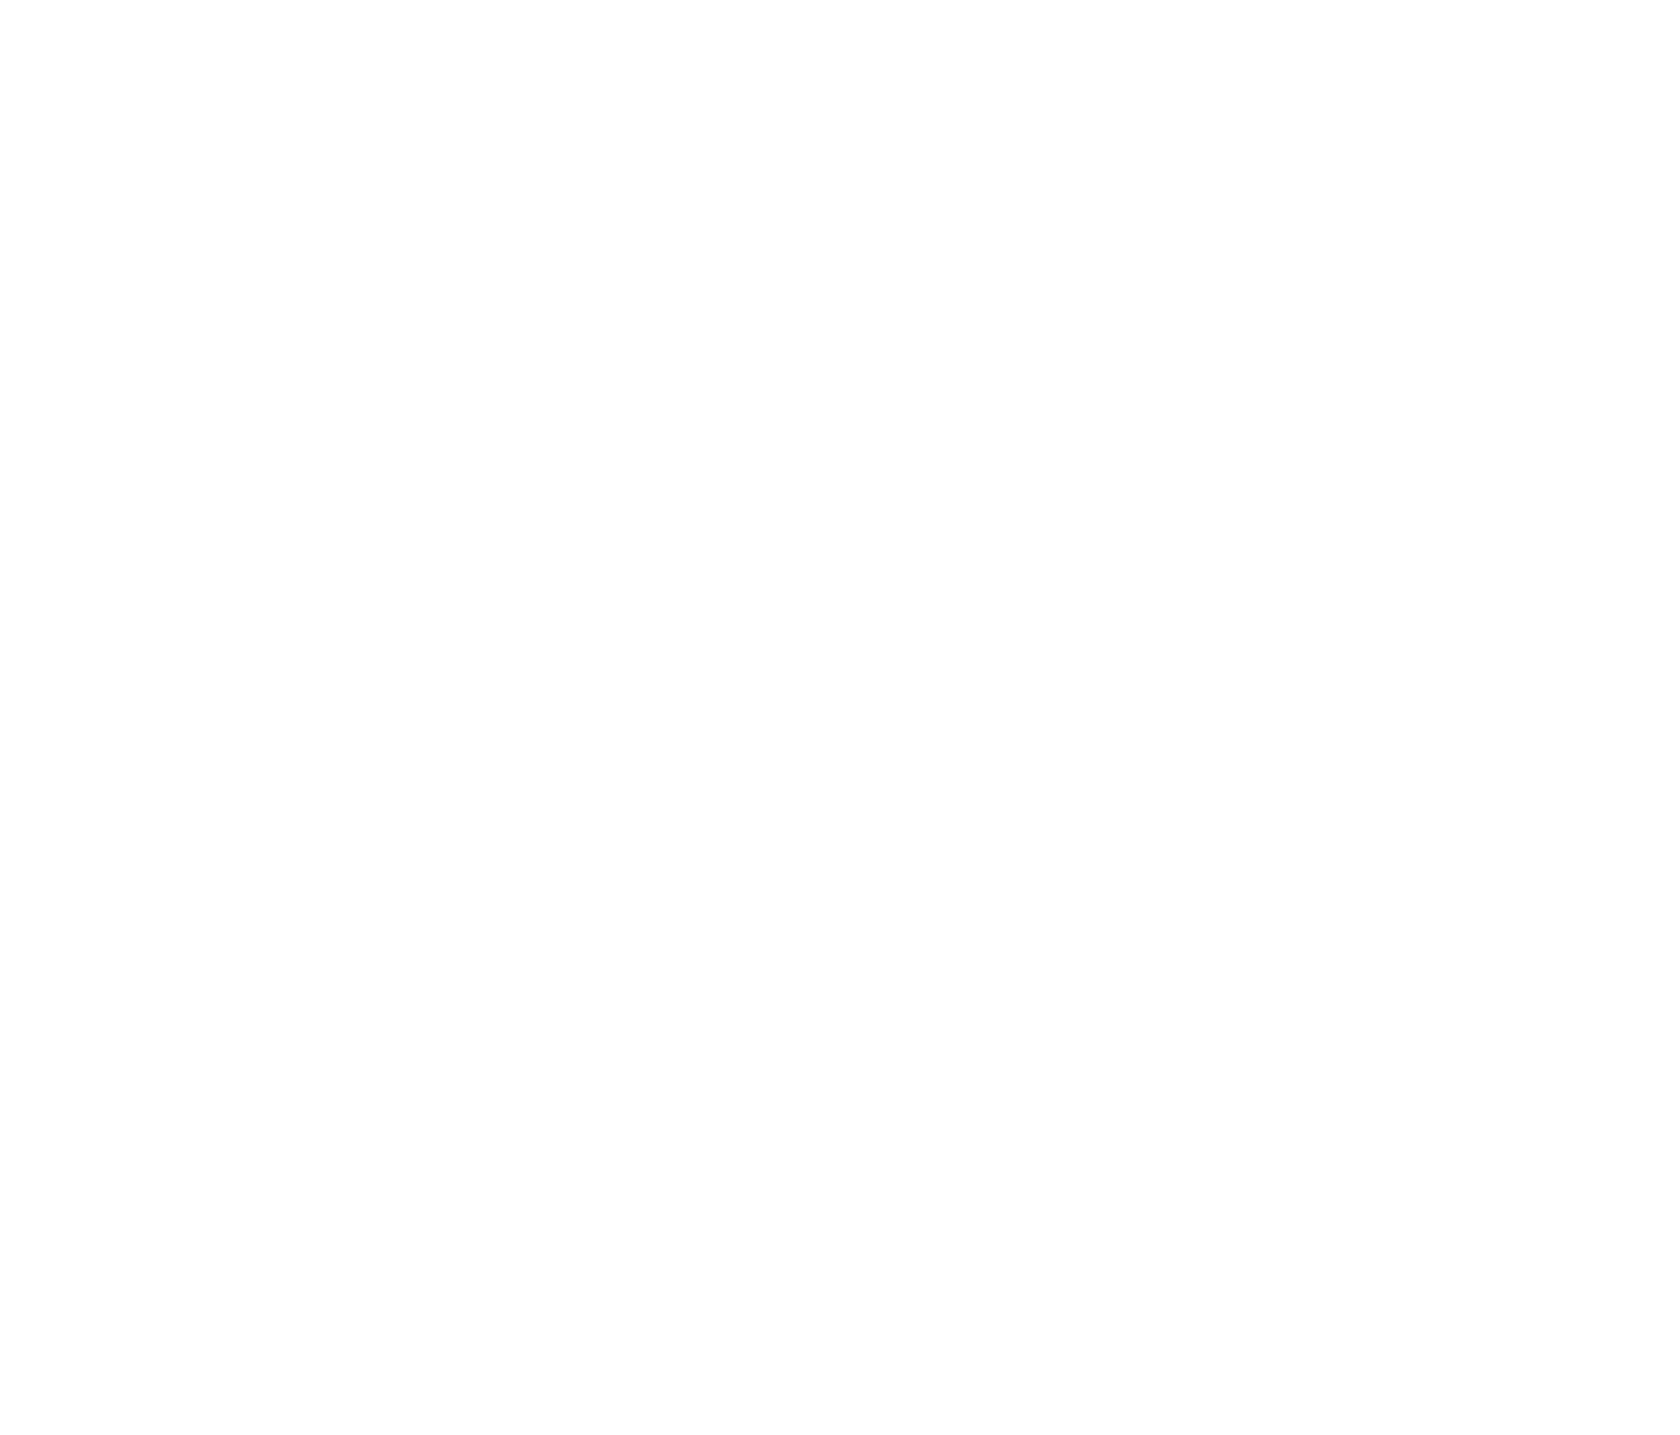 Pulmonx logo pour fonds sombres (PNG transparent)